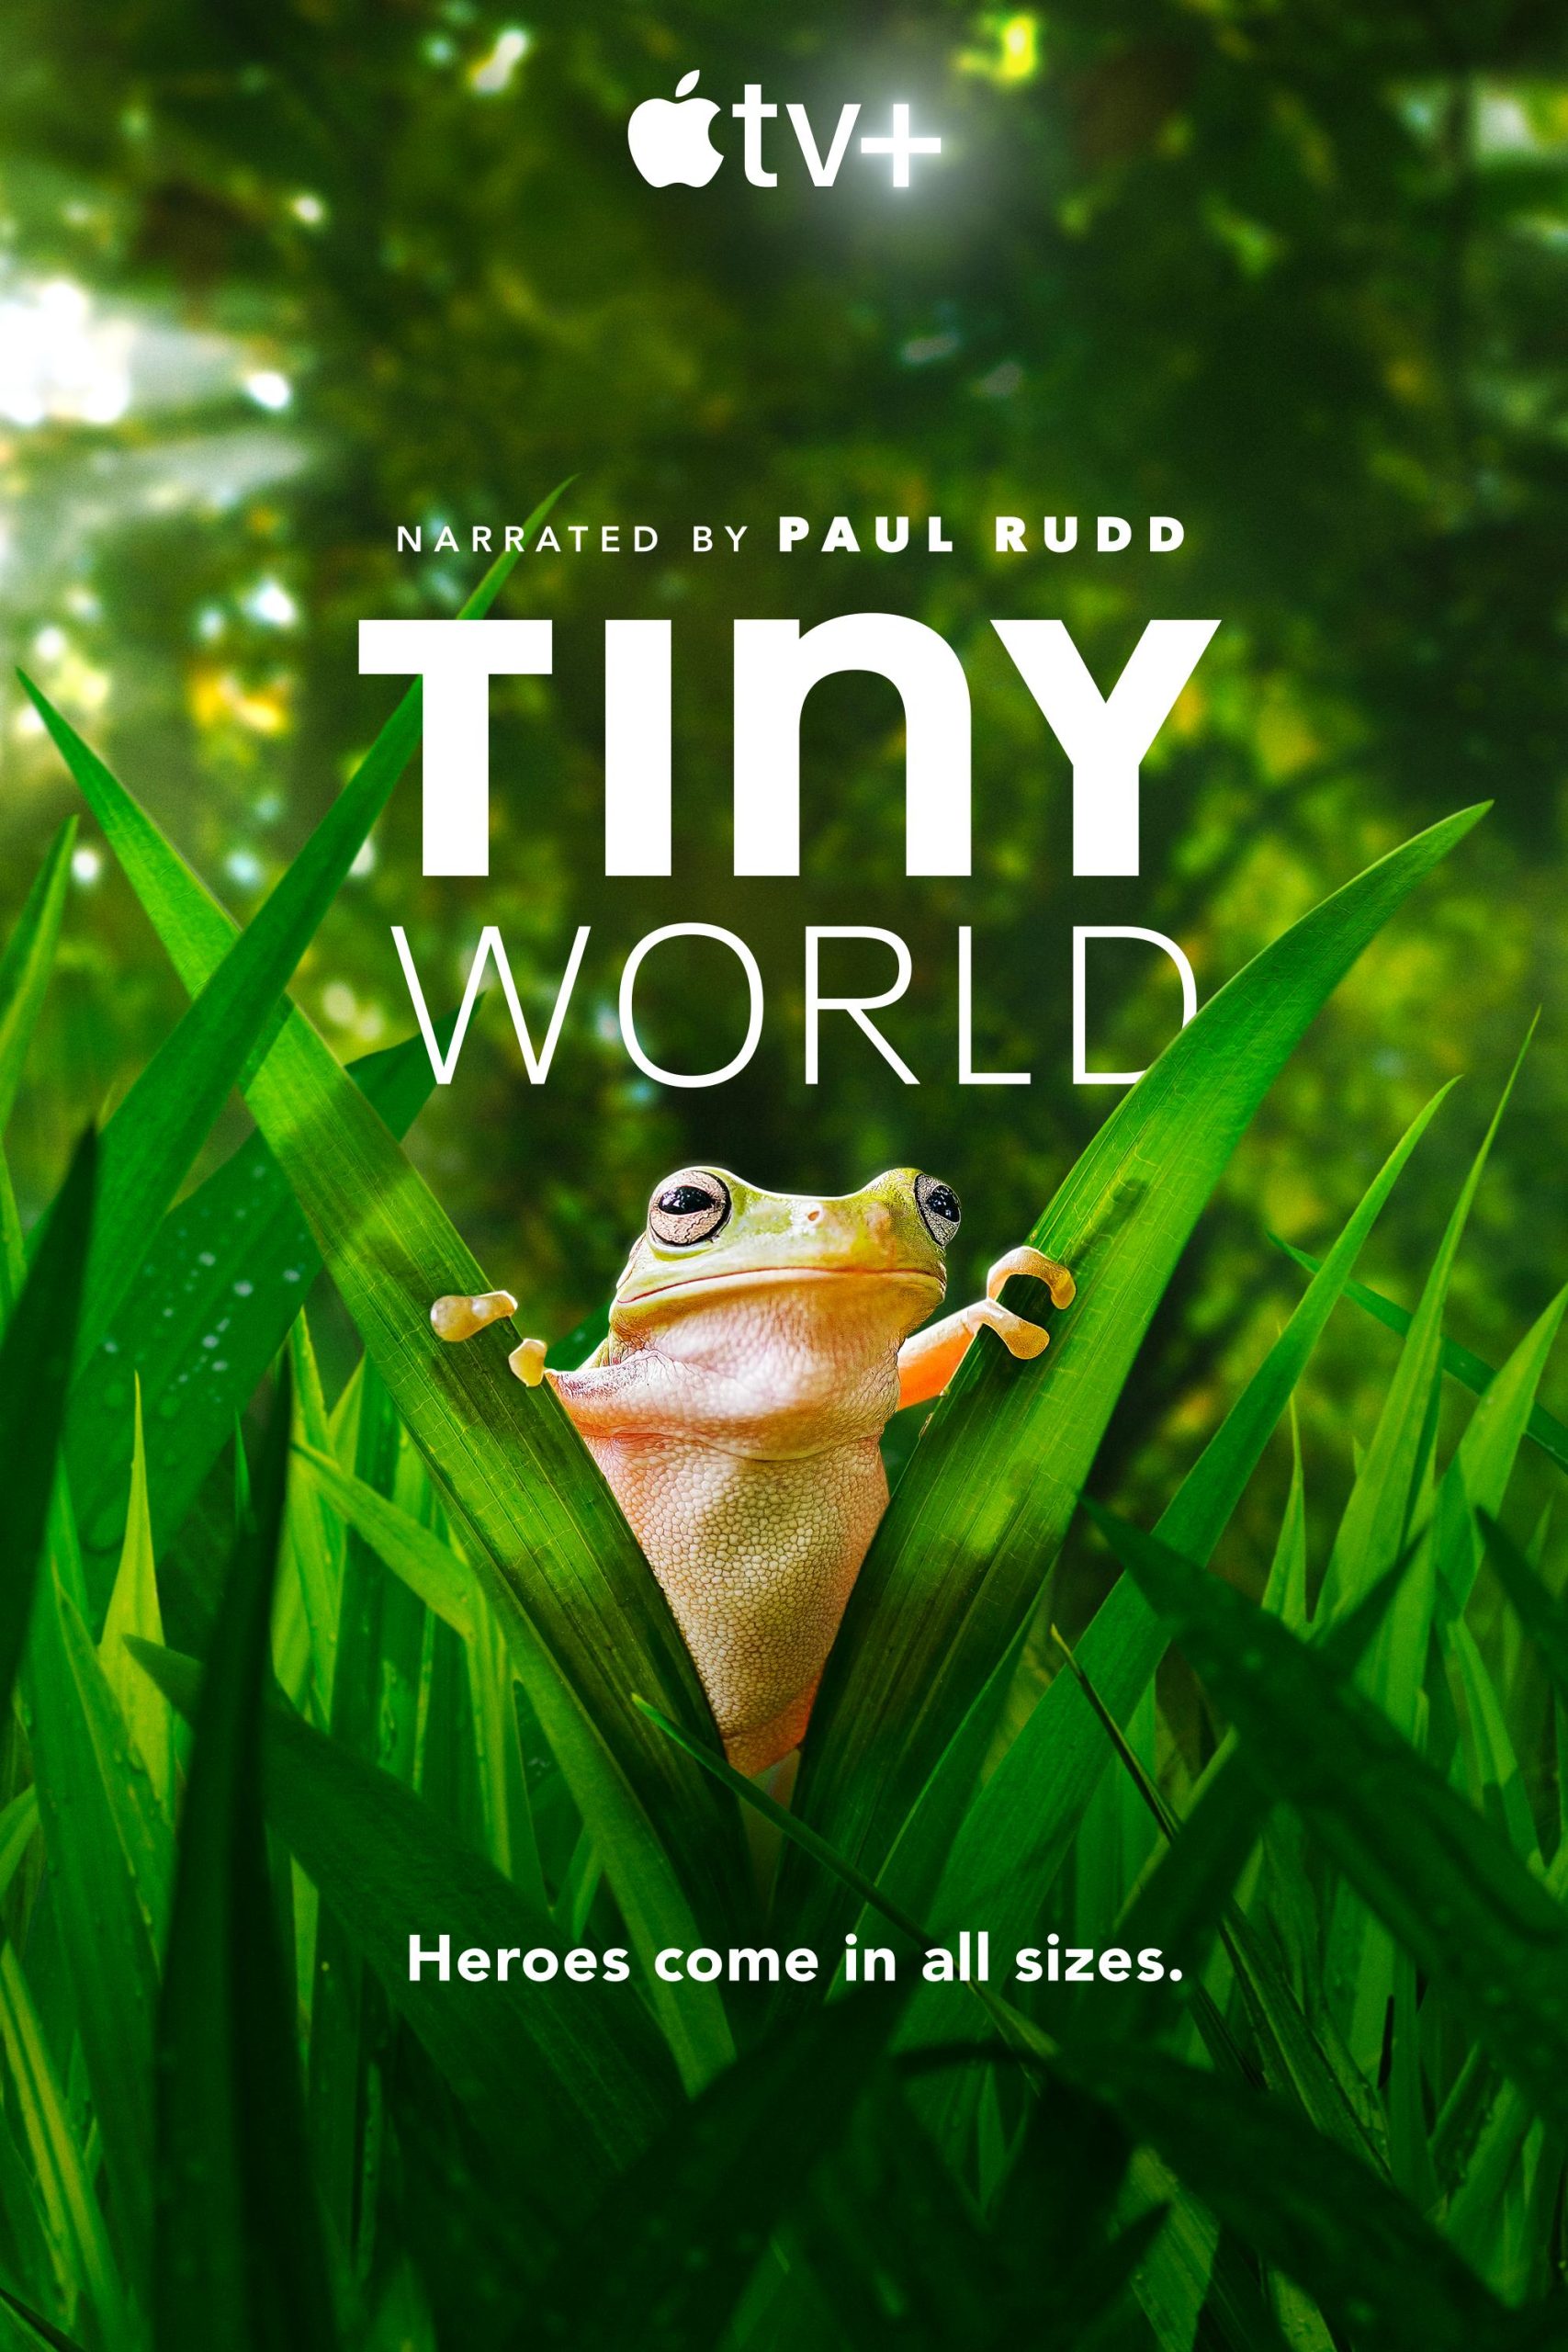 مستند دنیا کوچک 2020 Tiny World